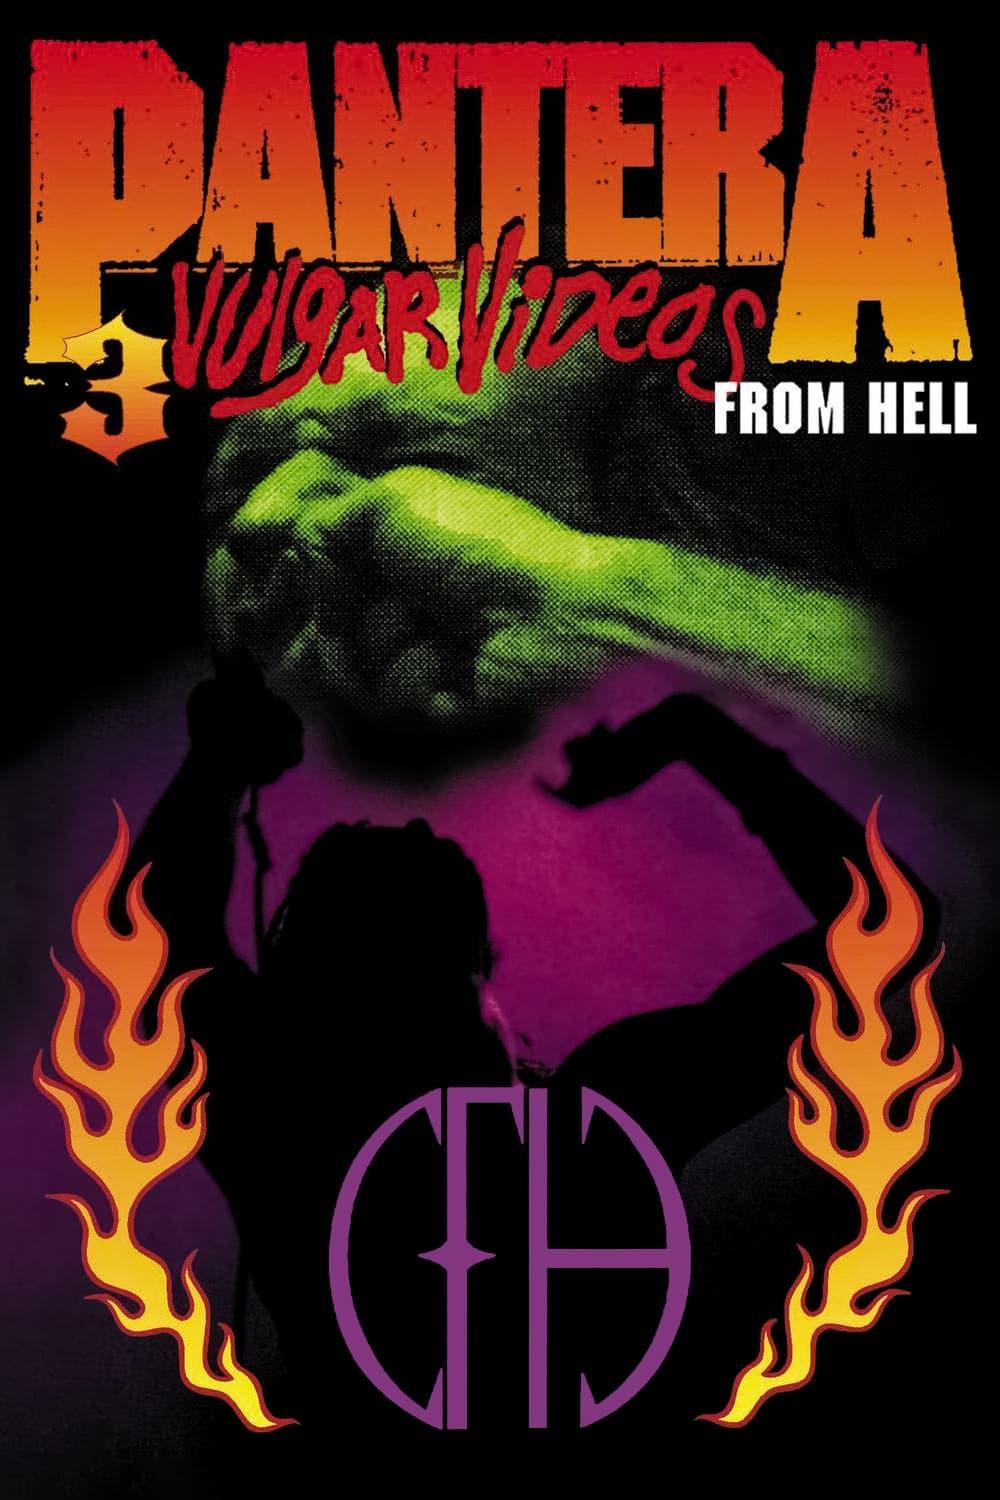 Pantera: 3 Vulgar Videos From Hell poster